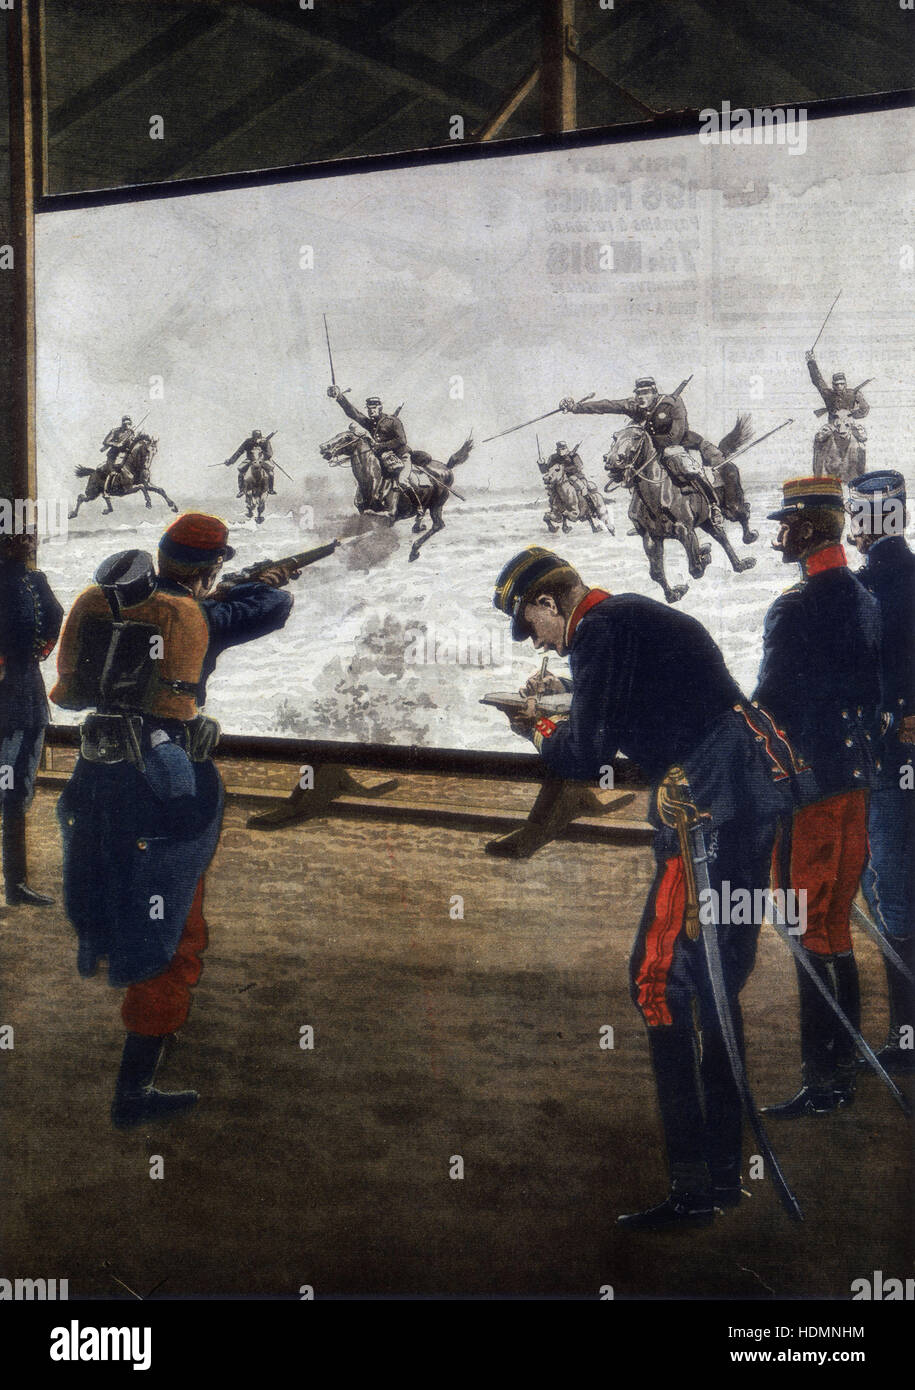 "Le Petit Journal', (París, 30 de junio de 1912) - Los soldados franceses con película de una carga de caballería para práctica de fusil Foto de stock